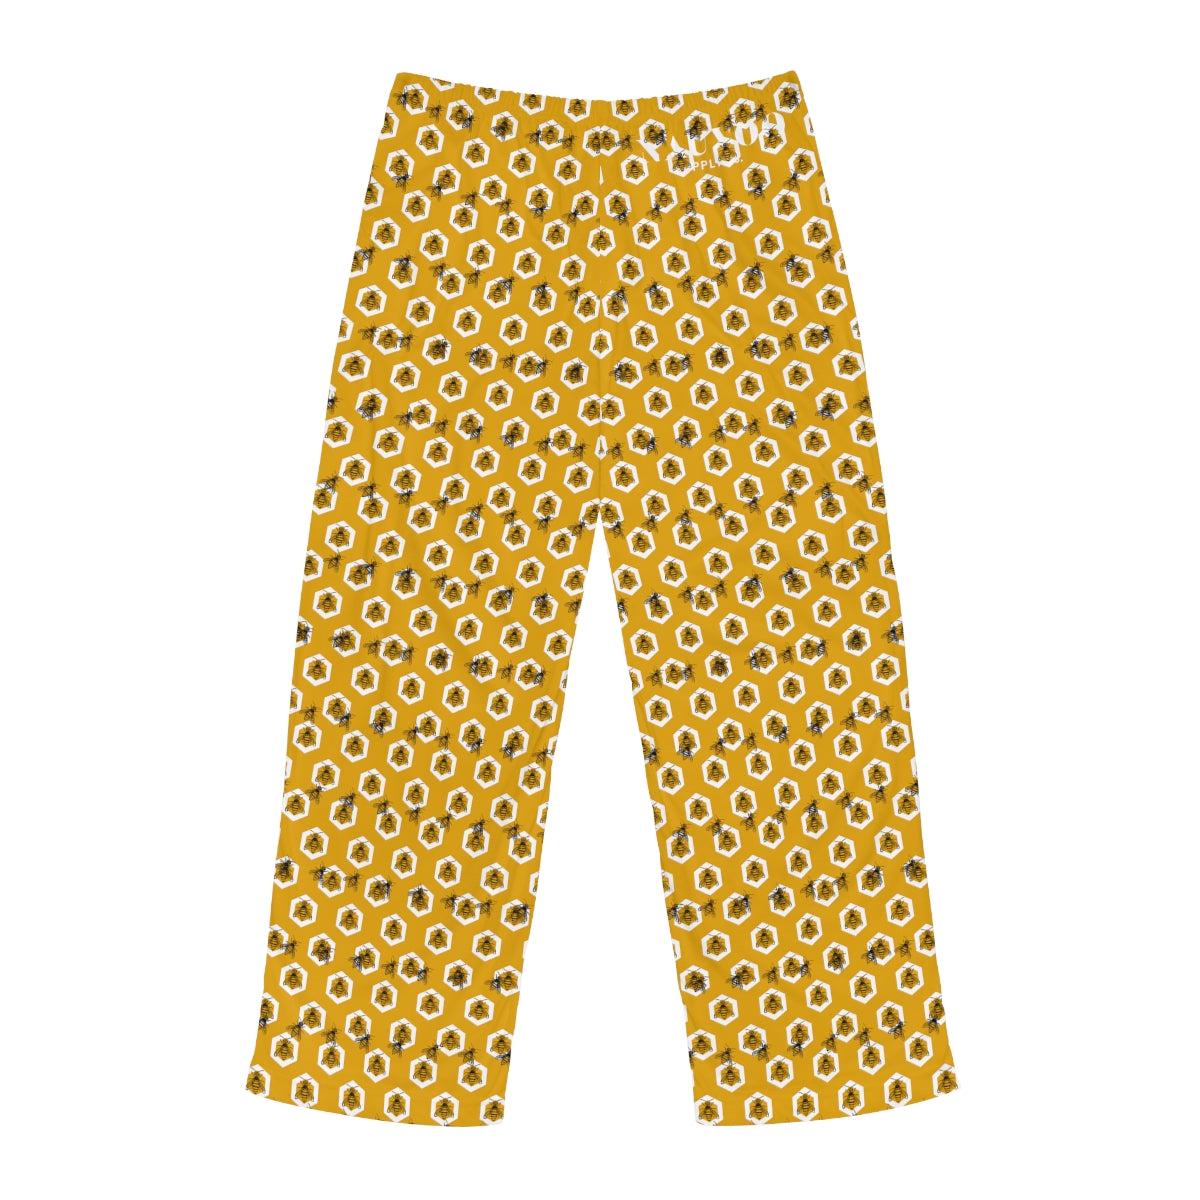 We Believe - Deseret Honey Bee Pajama Pants